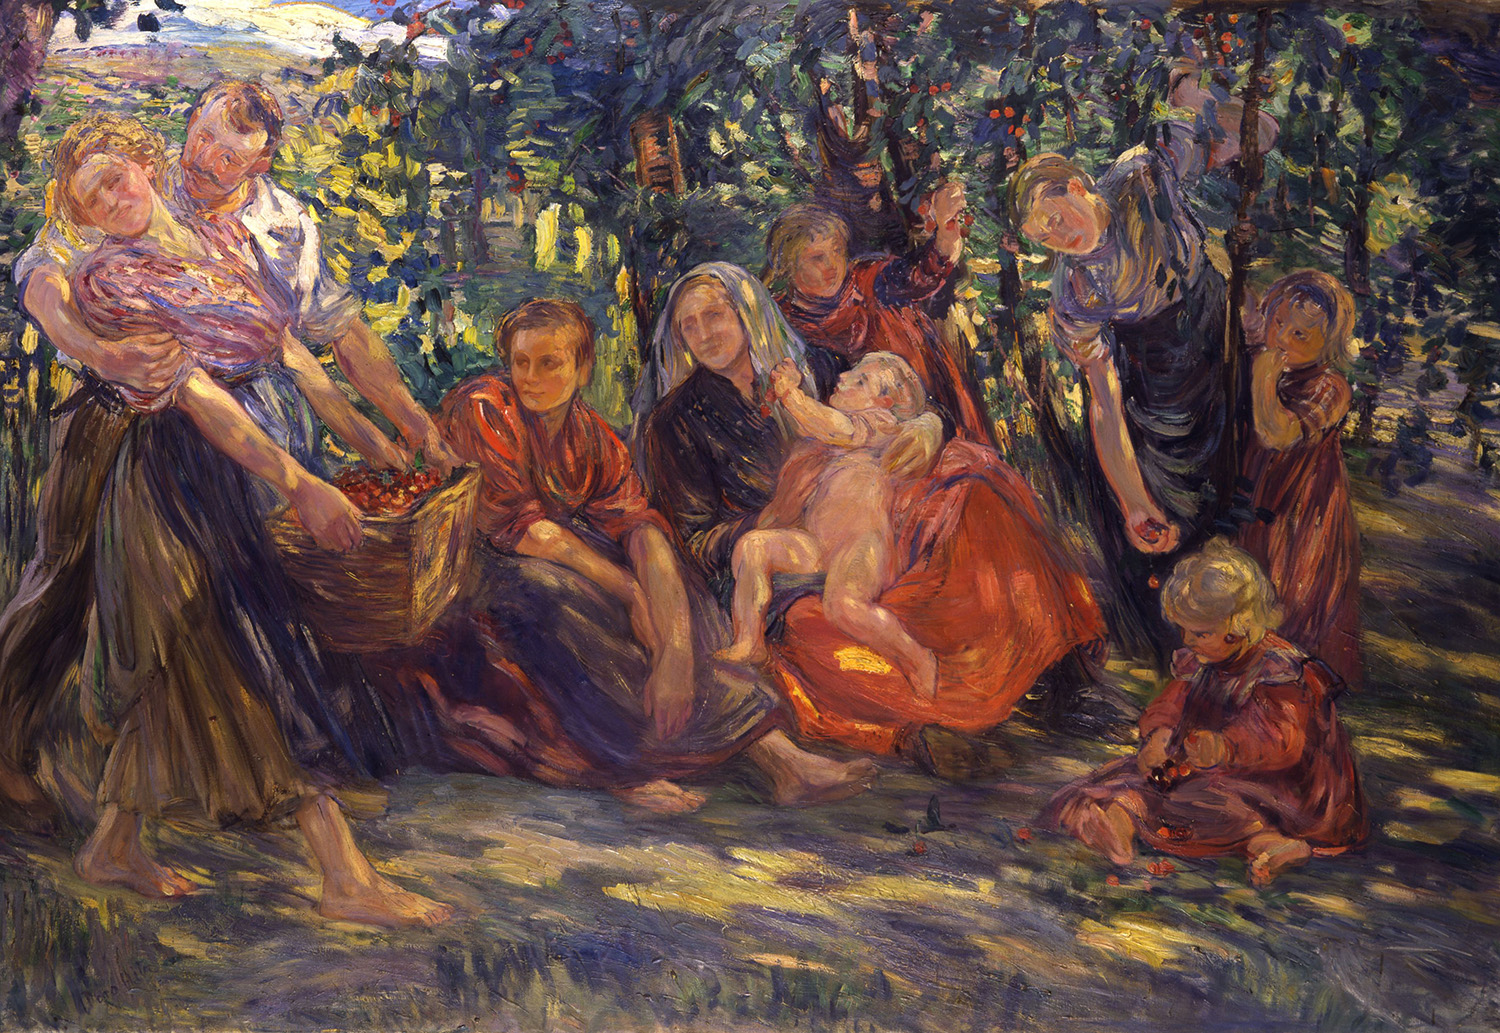 In spätsommerlichem Licht und Farbe schiebt sich die Darstellung der Lebensalter: zentral eine Mutter mit Kind; links von ihr eine ältere Frau, die sich zu einem im Gras sitzenden Kind herunterbeugt; rechts von ihr ein Mädchen und eine junge Frau, die von einem Arbeiter stürmisch umworben wird.